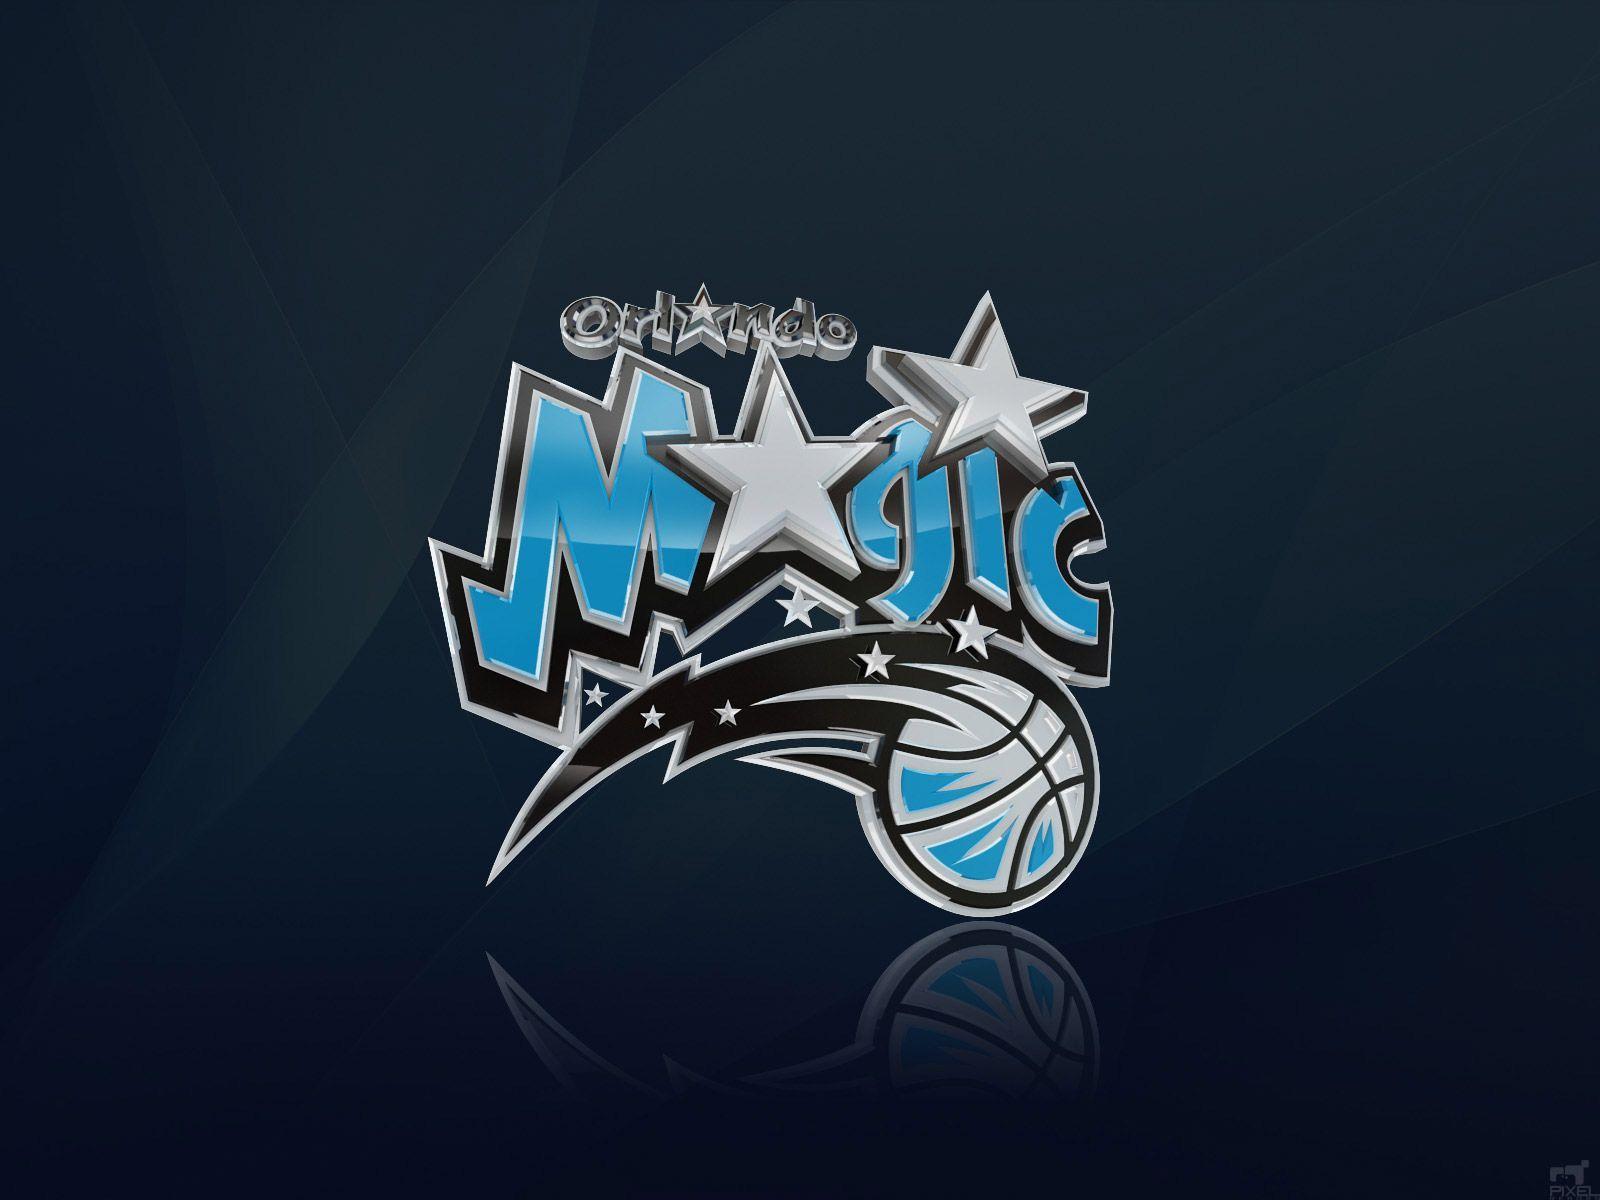 Orlando Magic 3D Logo Wallpaper. Basketball Wallpaper at